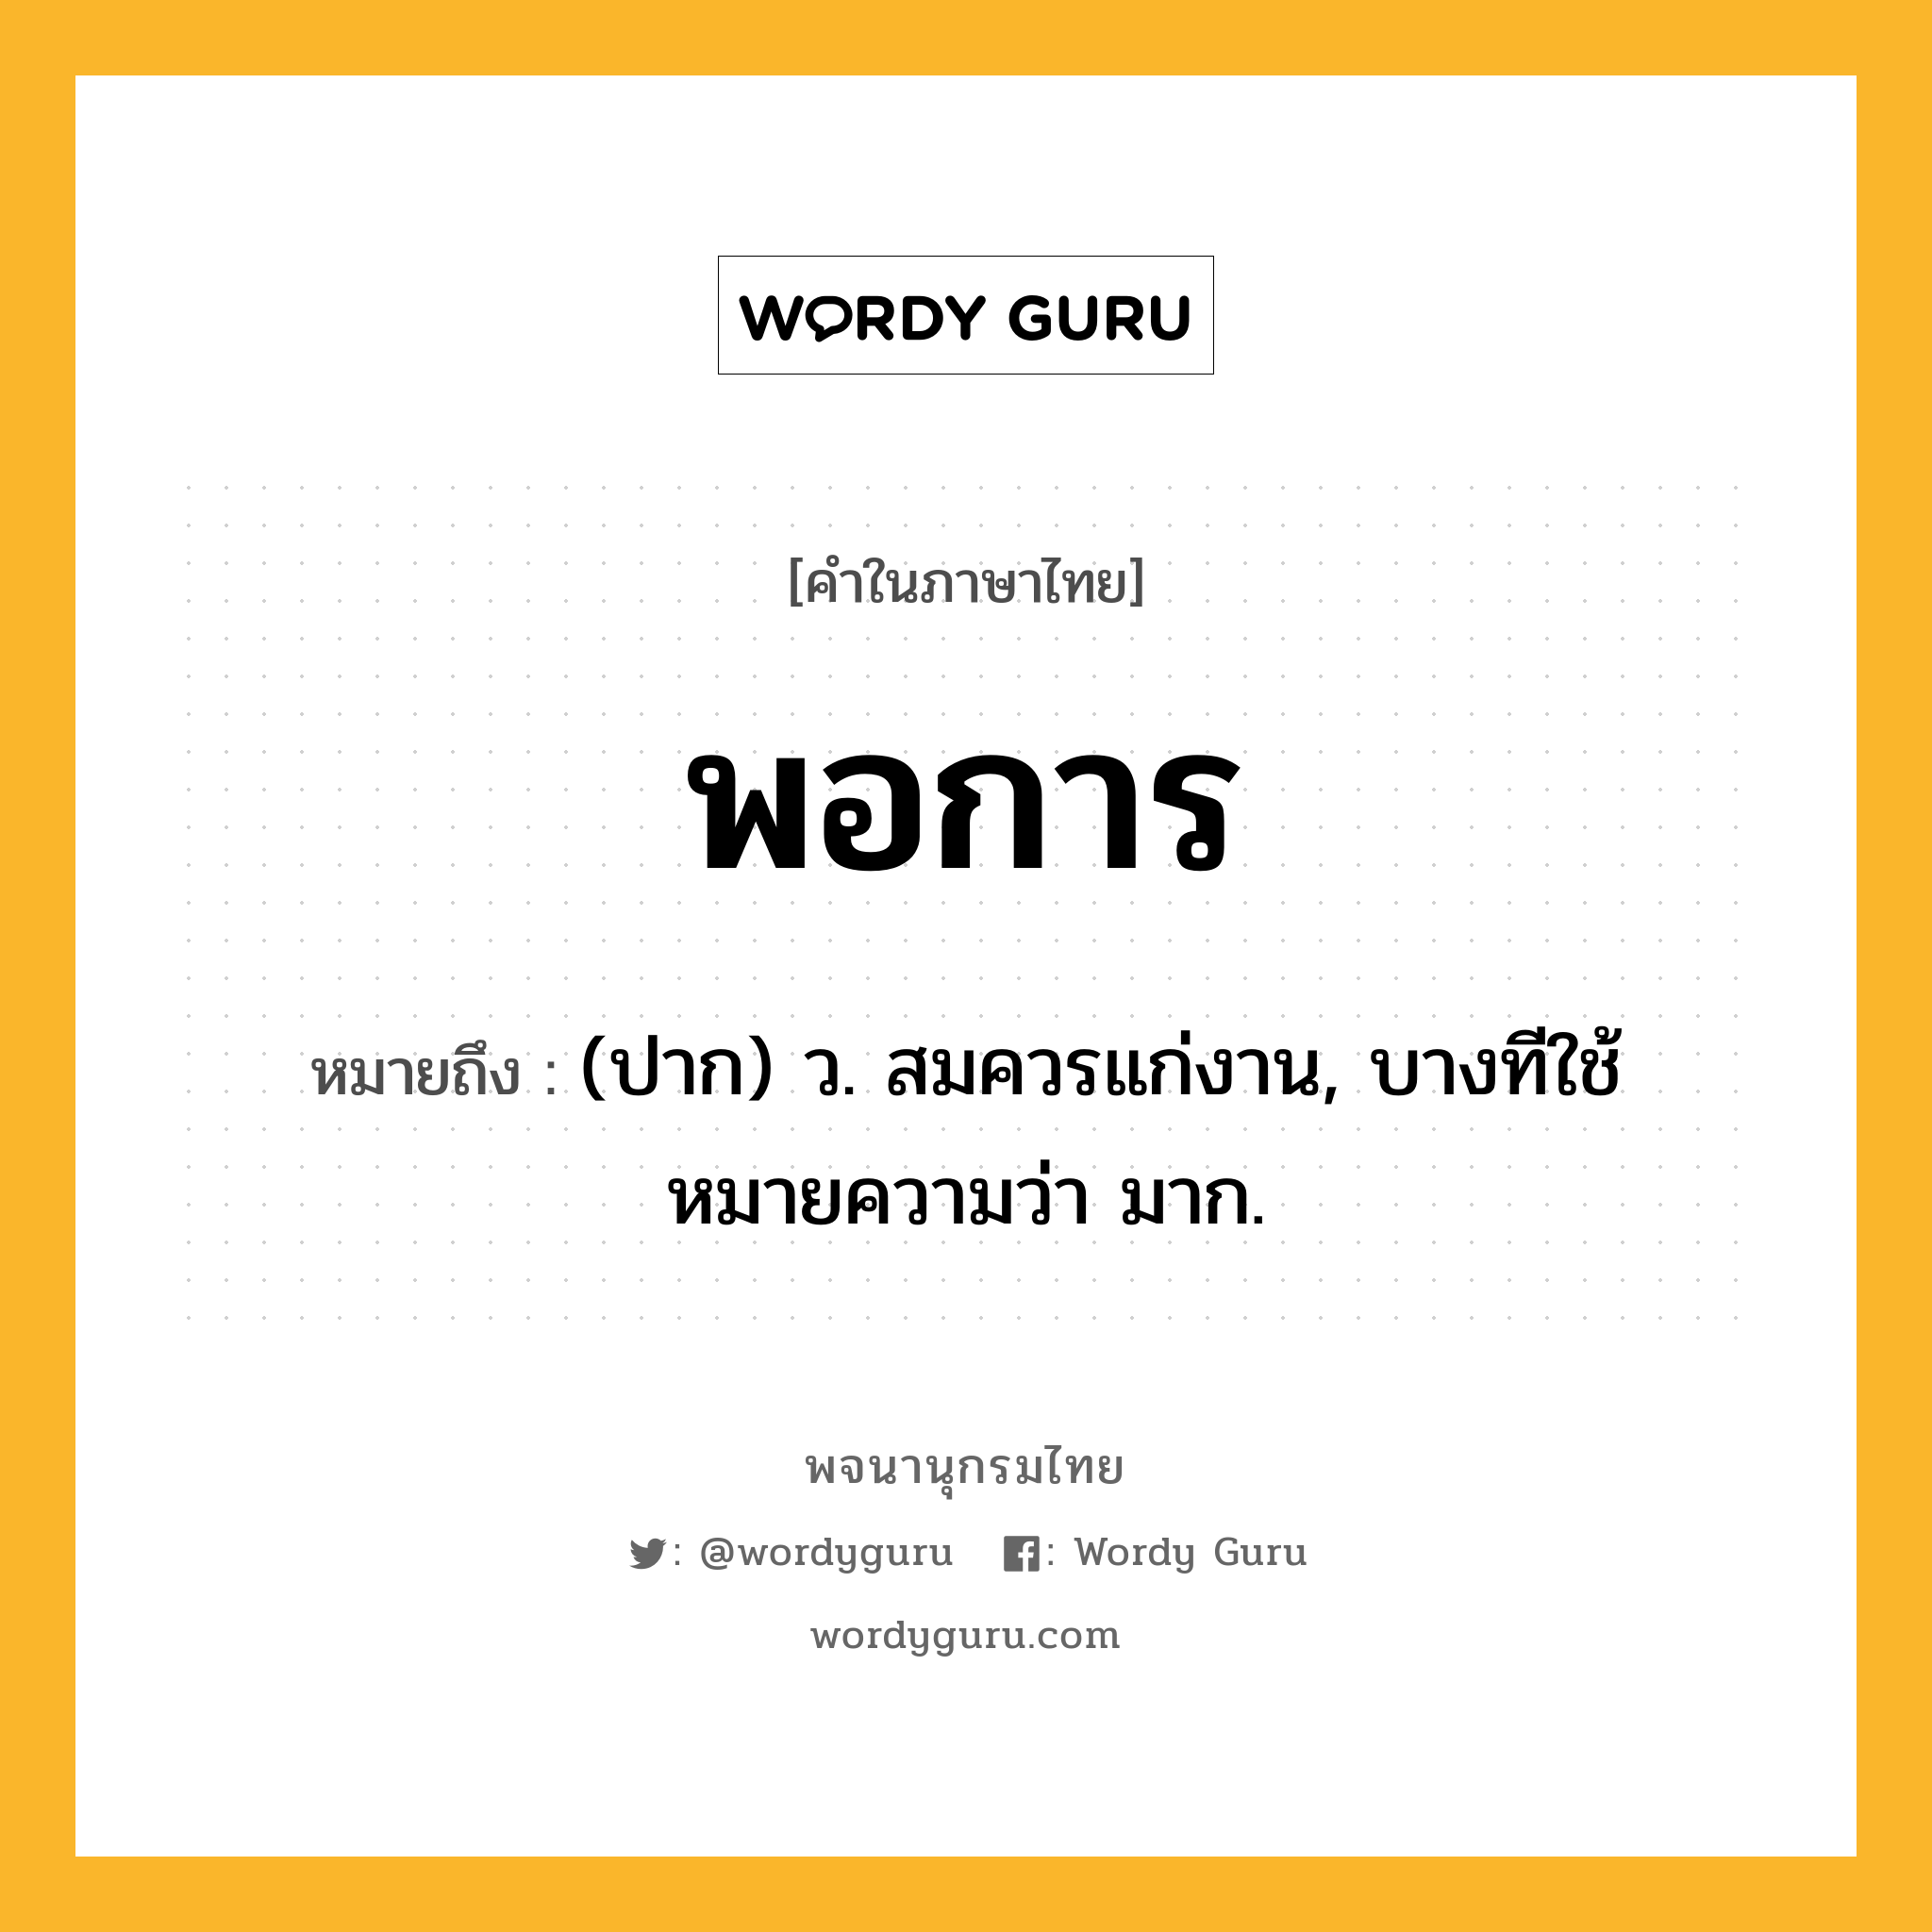 พอการ ความหมาย หมายถึงอะไร?, คำในภาษาไทย พอการ หมายถึง (ปาก) ว. สมควรแก่งาน, บางทีใช้หมายความว่า มาก.